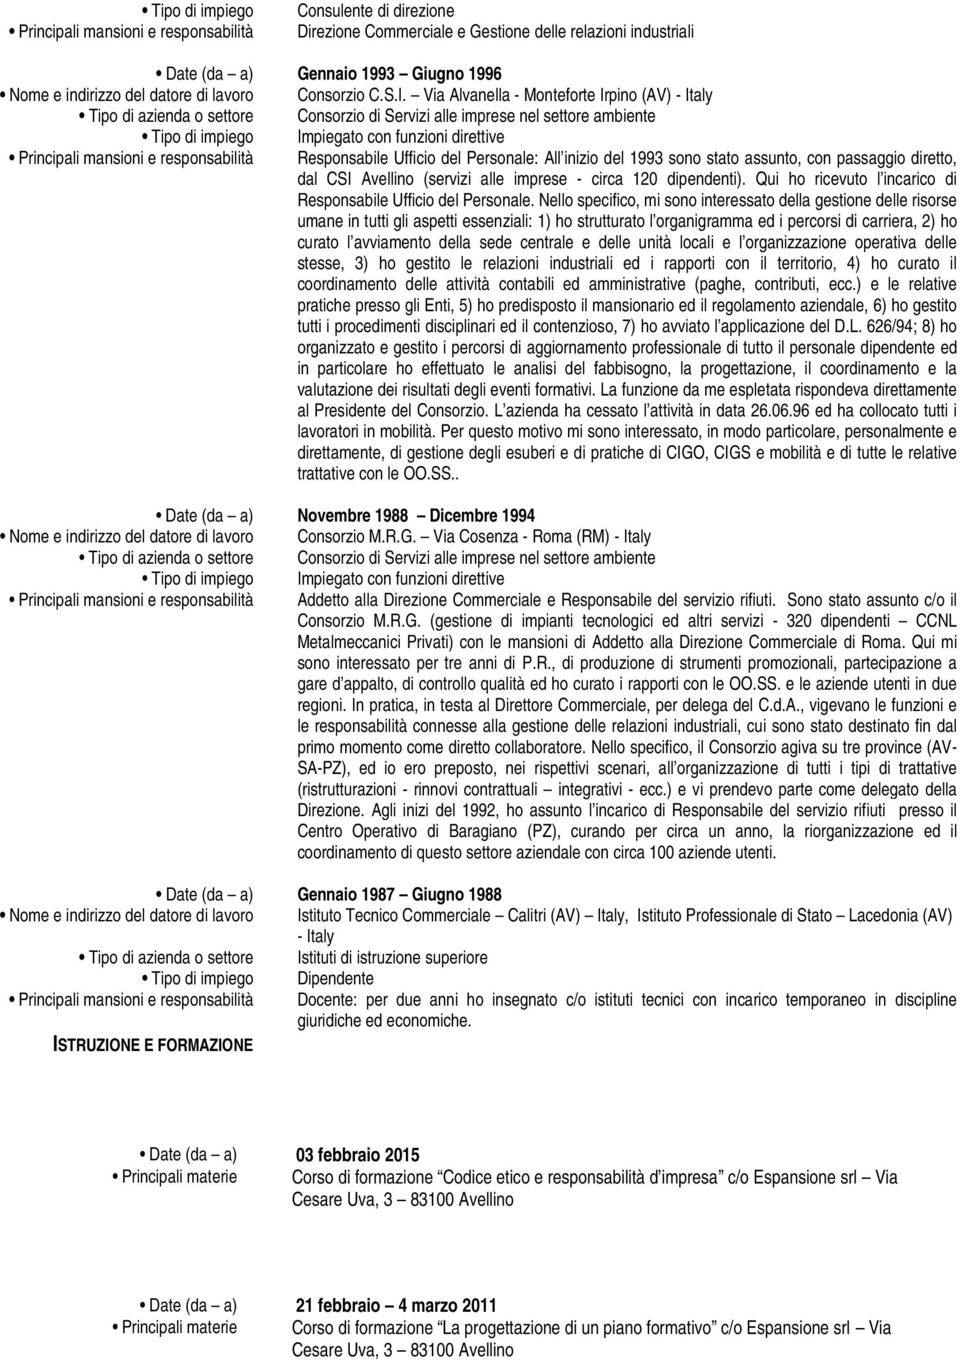 Via Alvanella - Monteforte Irpino (AV) - Italy Tipo di azienda o settore Consorzio di Servizi alle imprese nel settore ambiente Tipo di impiego Impiegato con funzioni direttive Principali mansioni e